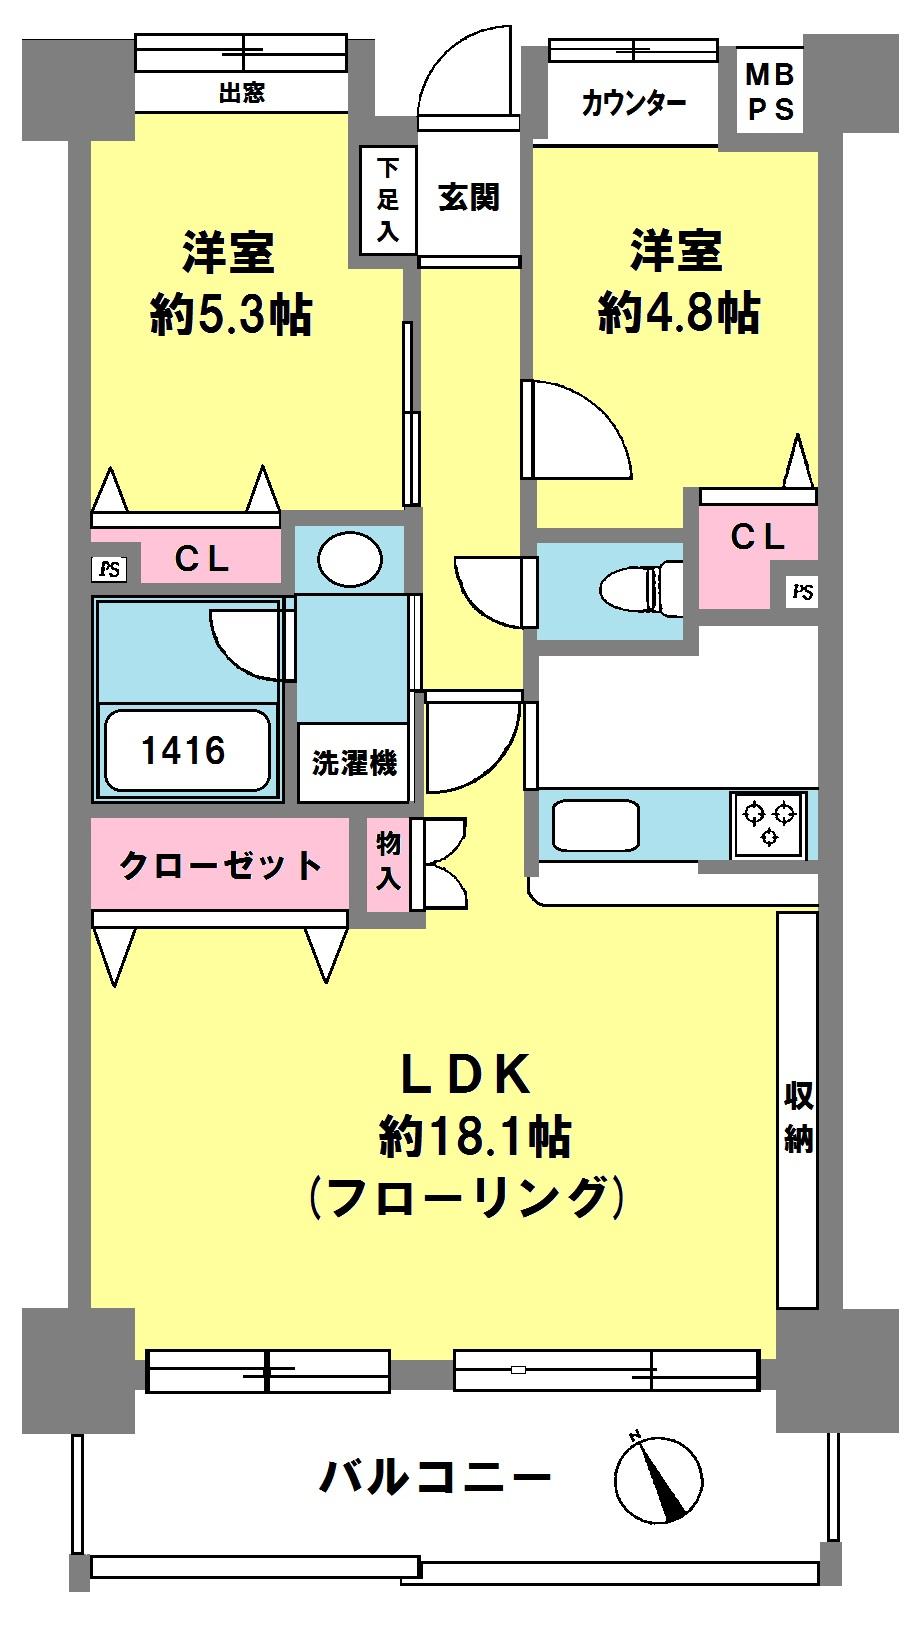 Floor plan. 2LDK, Price 32,800,000 yen, Footprint 62.9 sq m , Balcony area 10.45 sq m floor plan